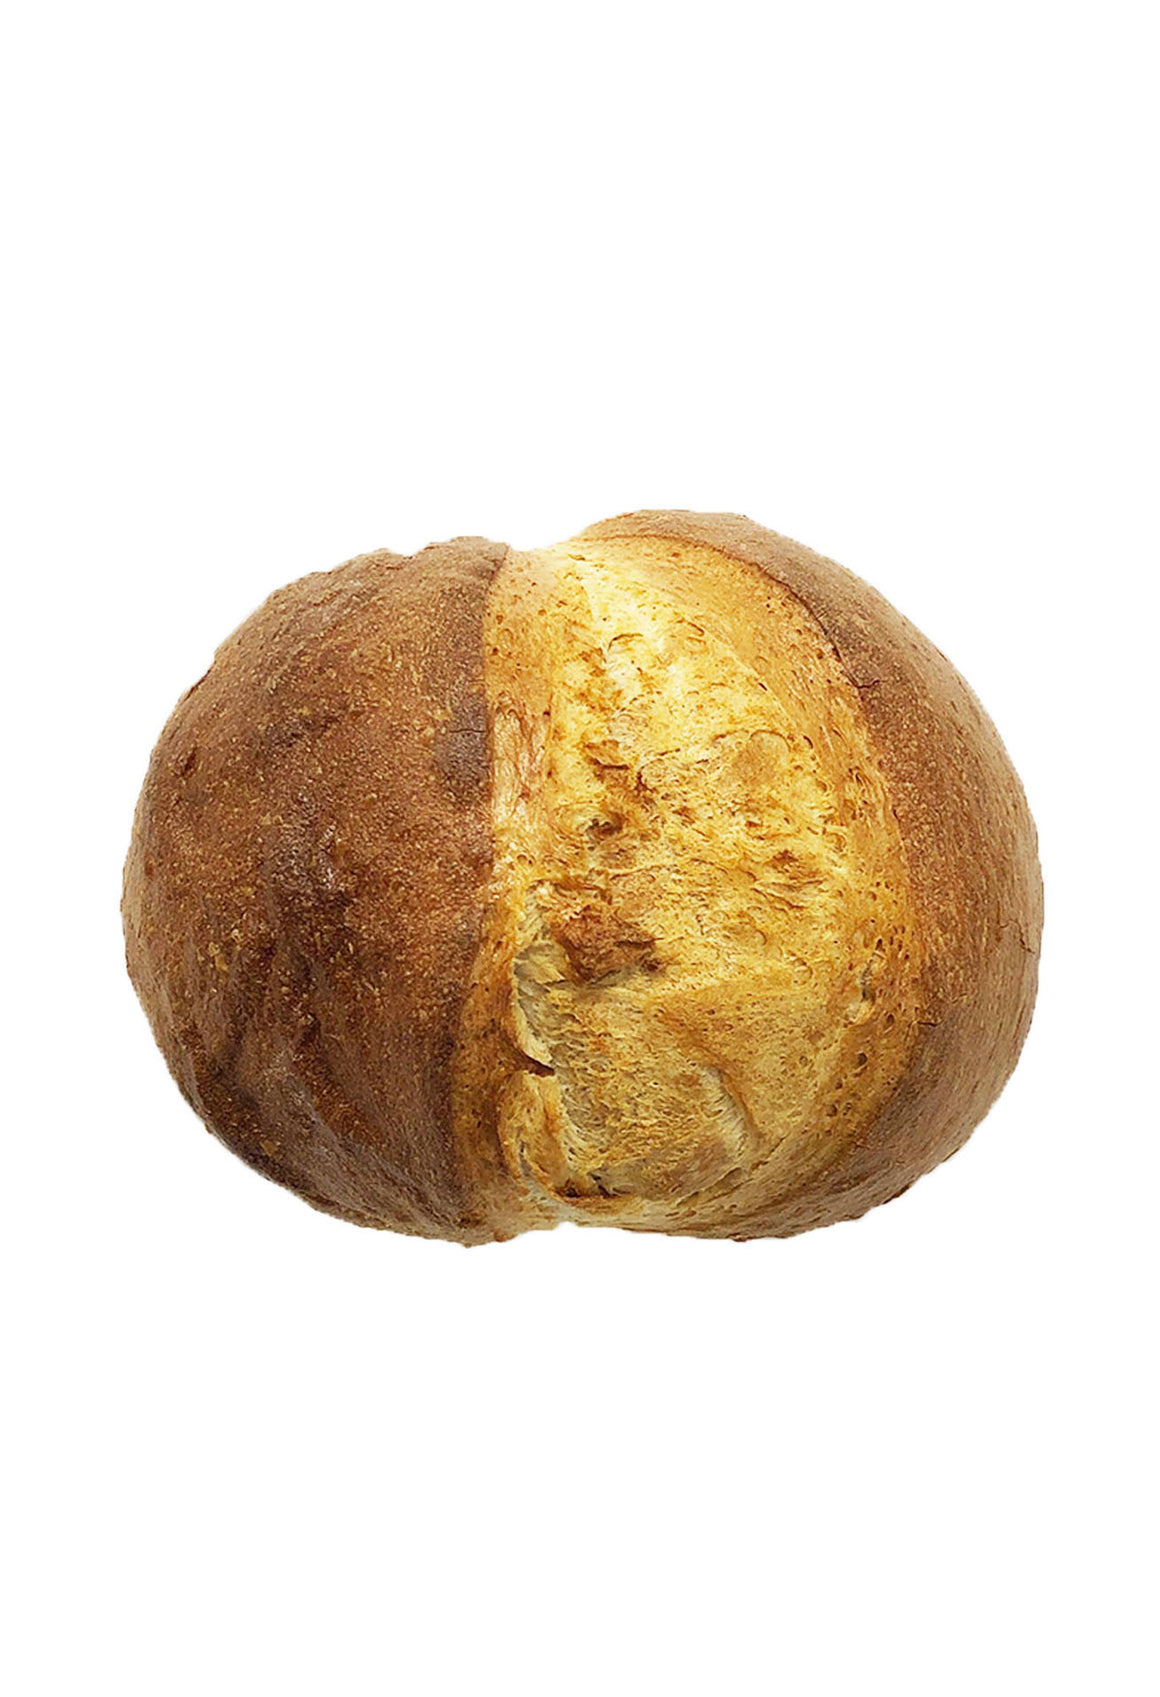 Hard Crust Bread